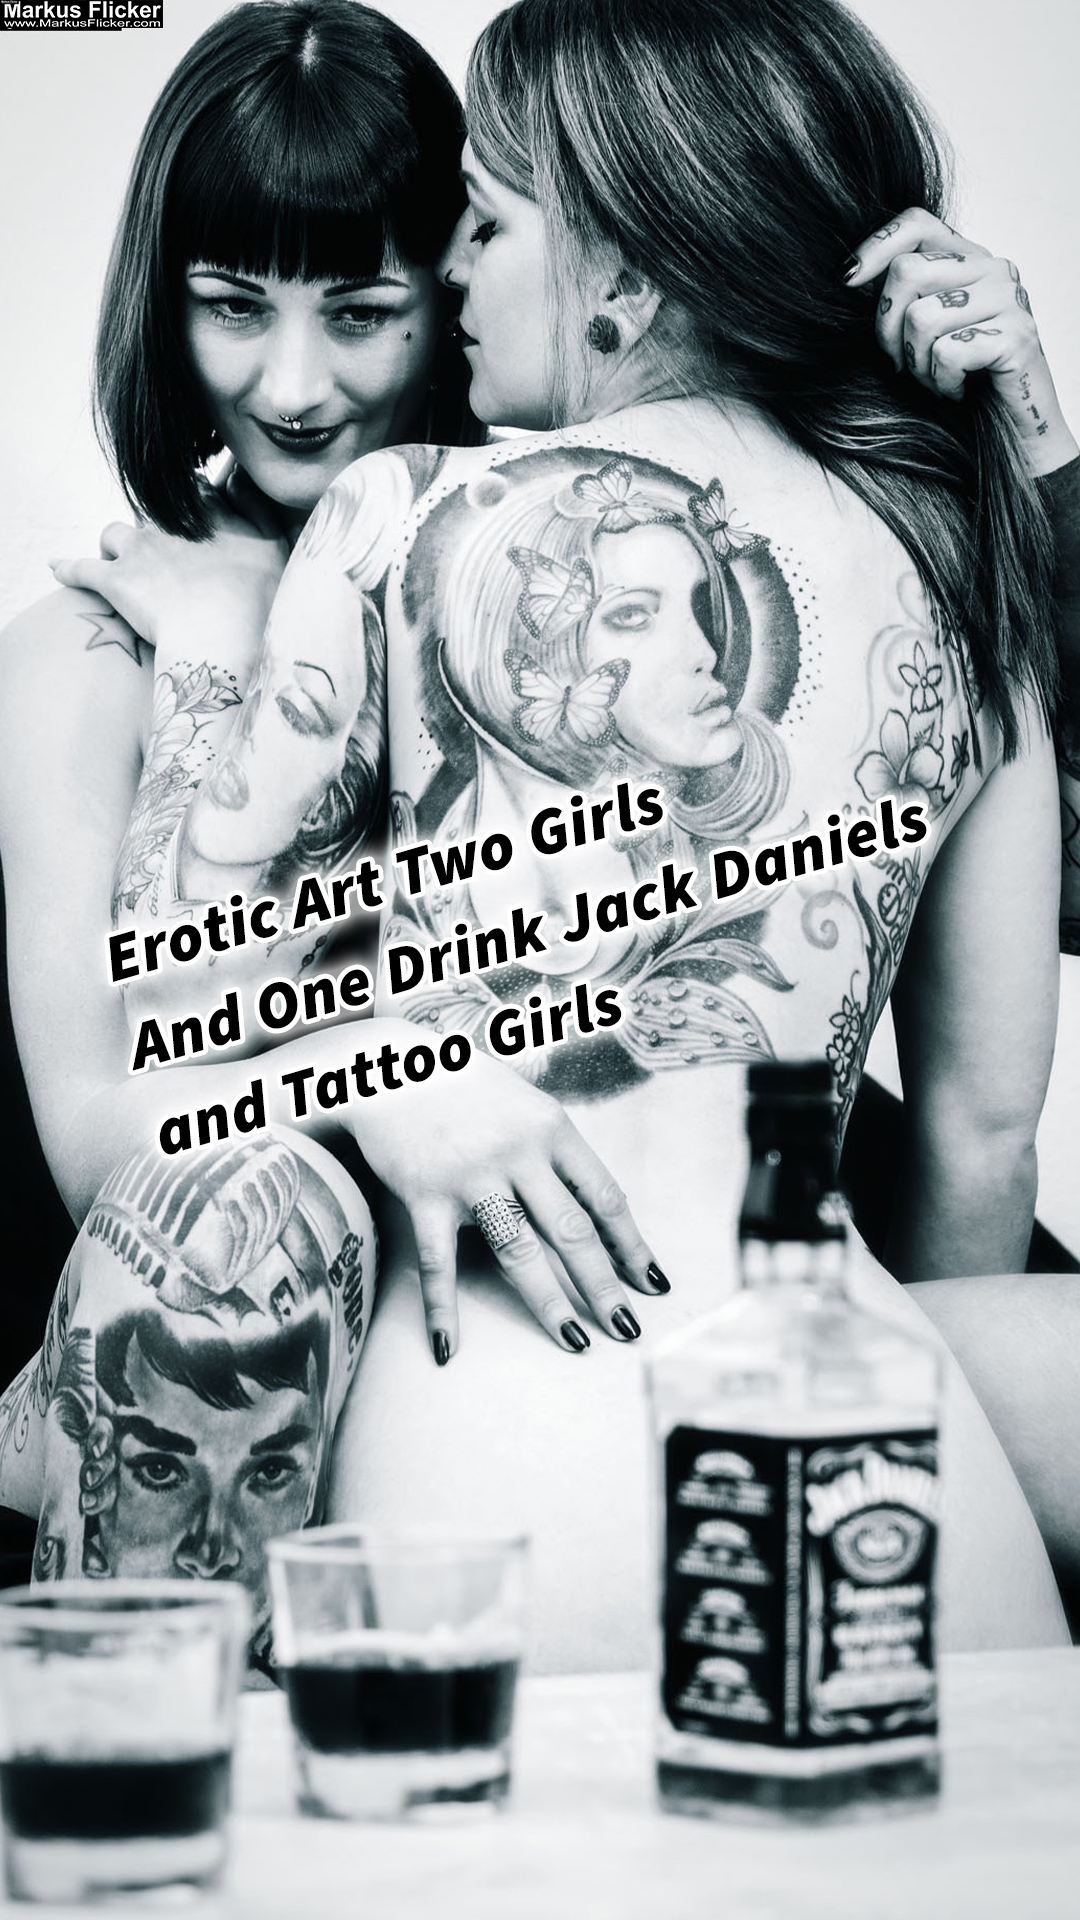 Erotic Art Two Girls And One Drink Jack Daniels and Tattoo Girls Sinnlichkeit und Erotik